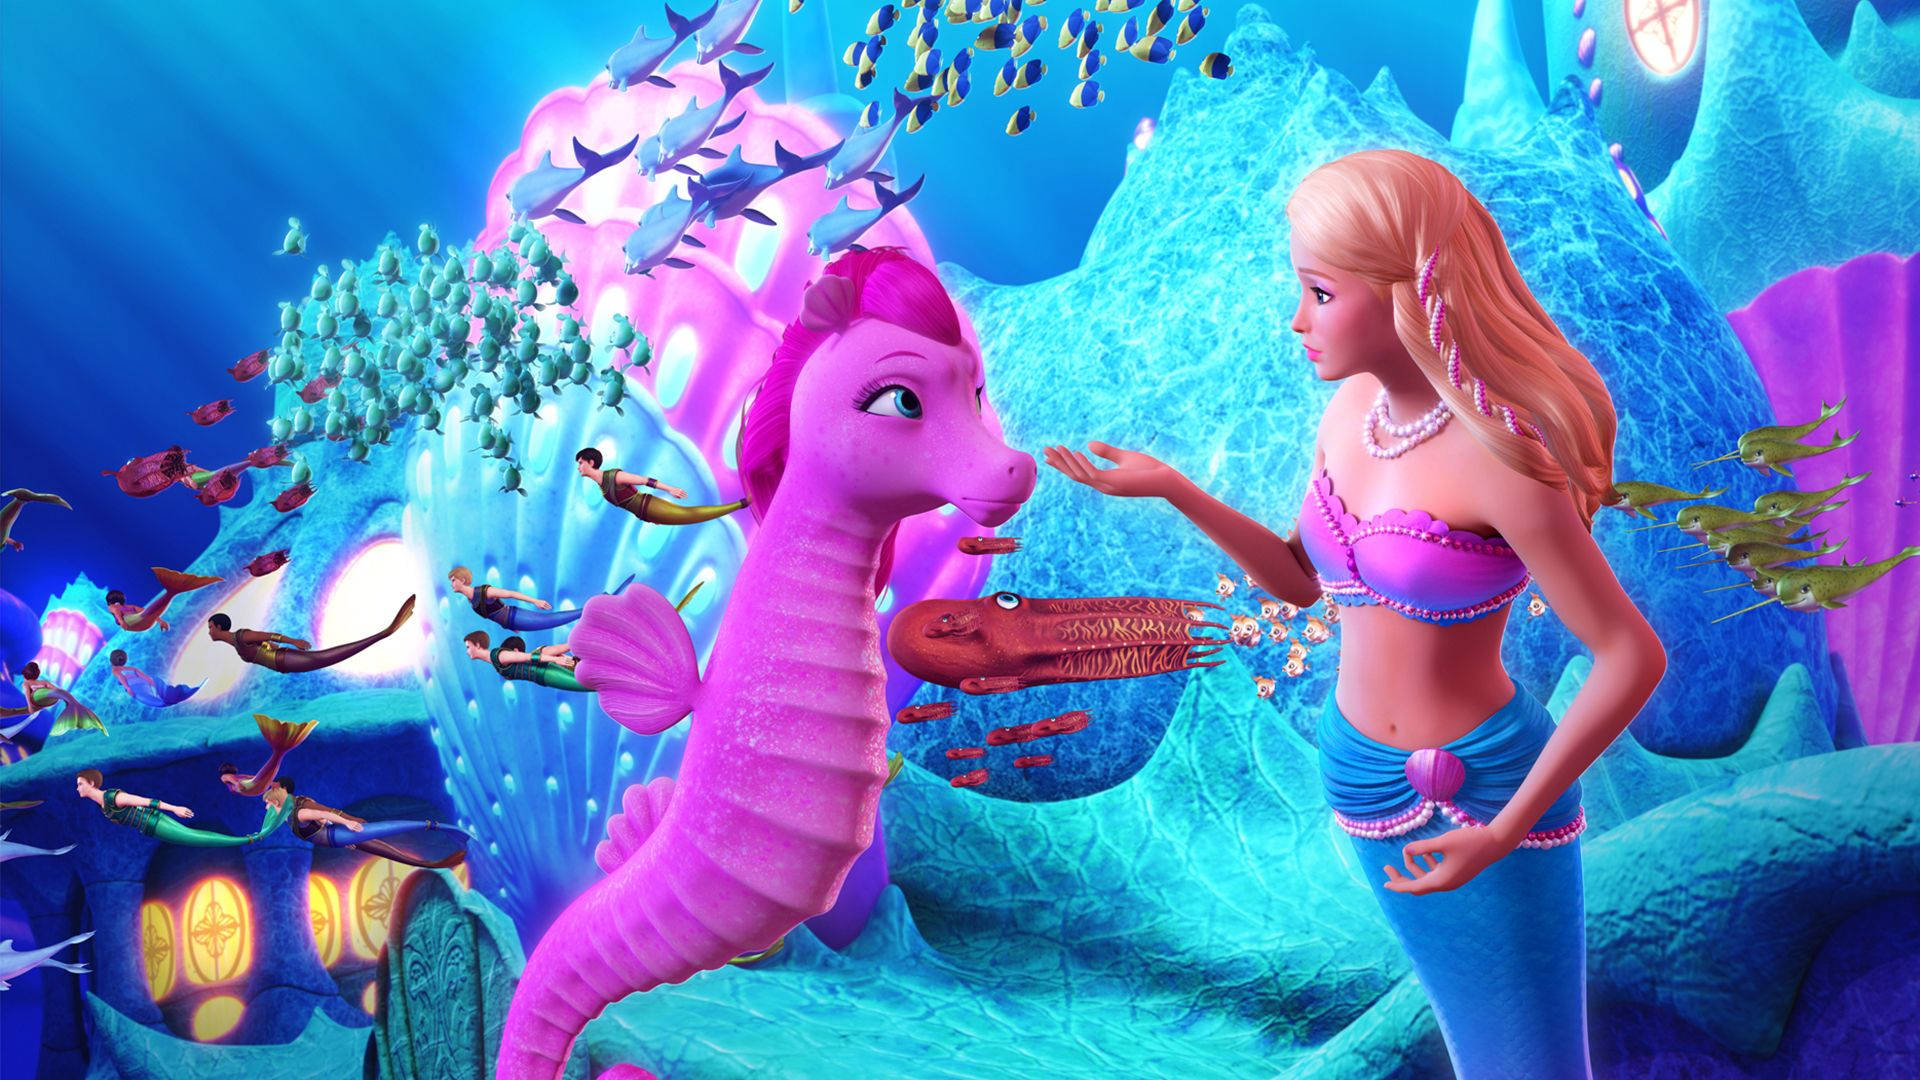 Barbie Mermaid And Seahorse Wallpaper